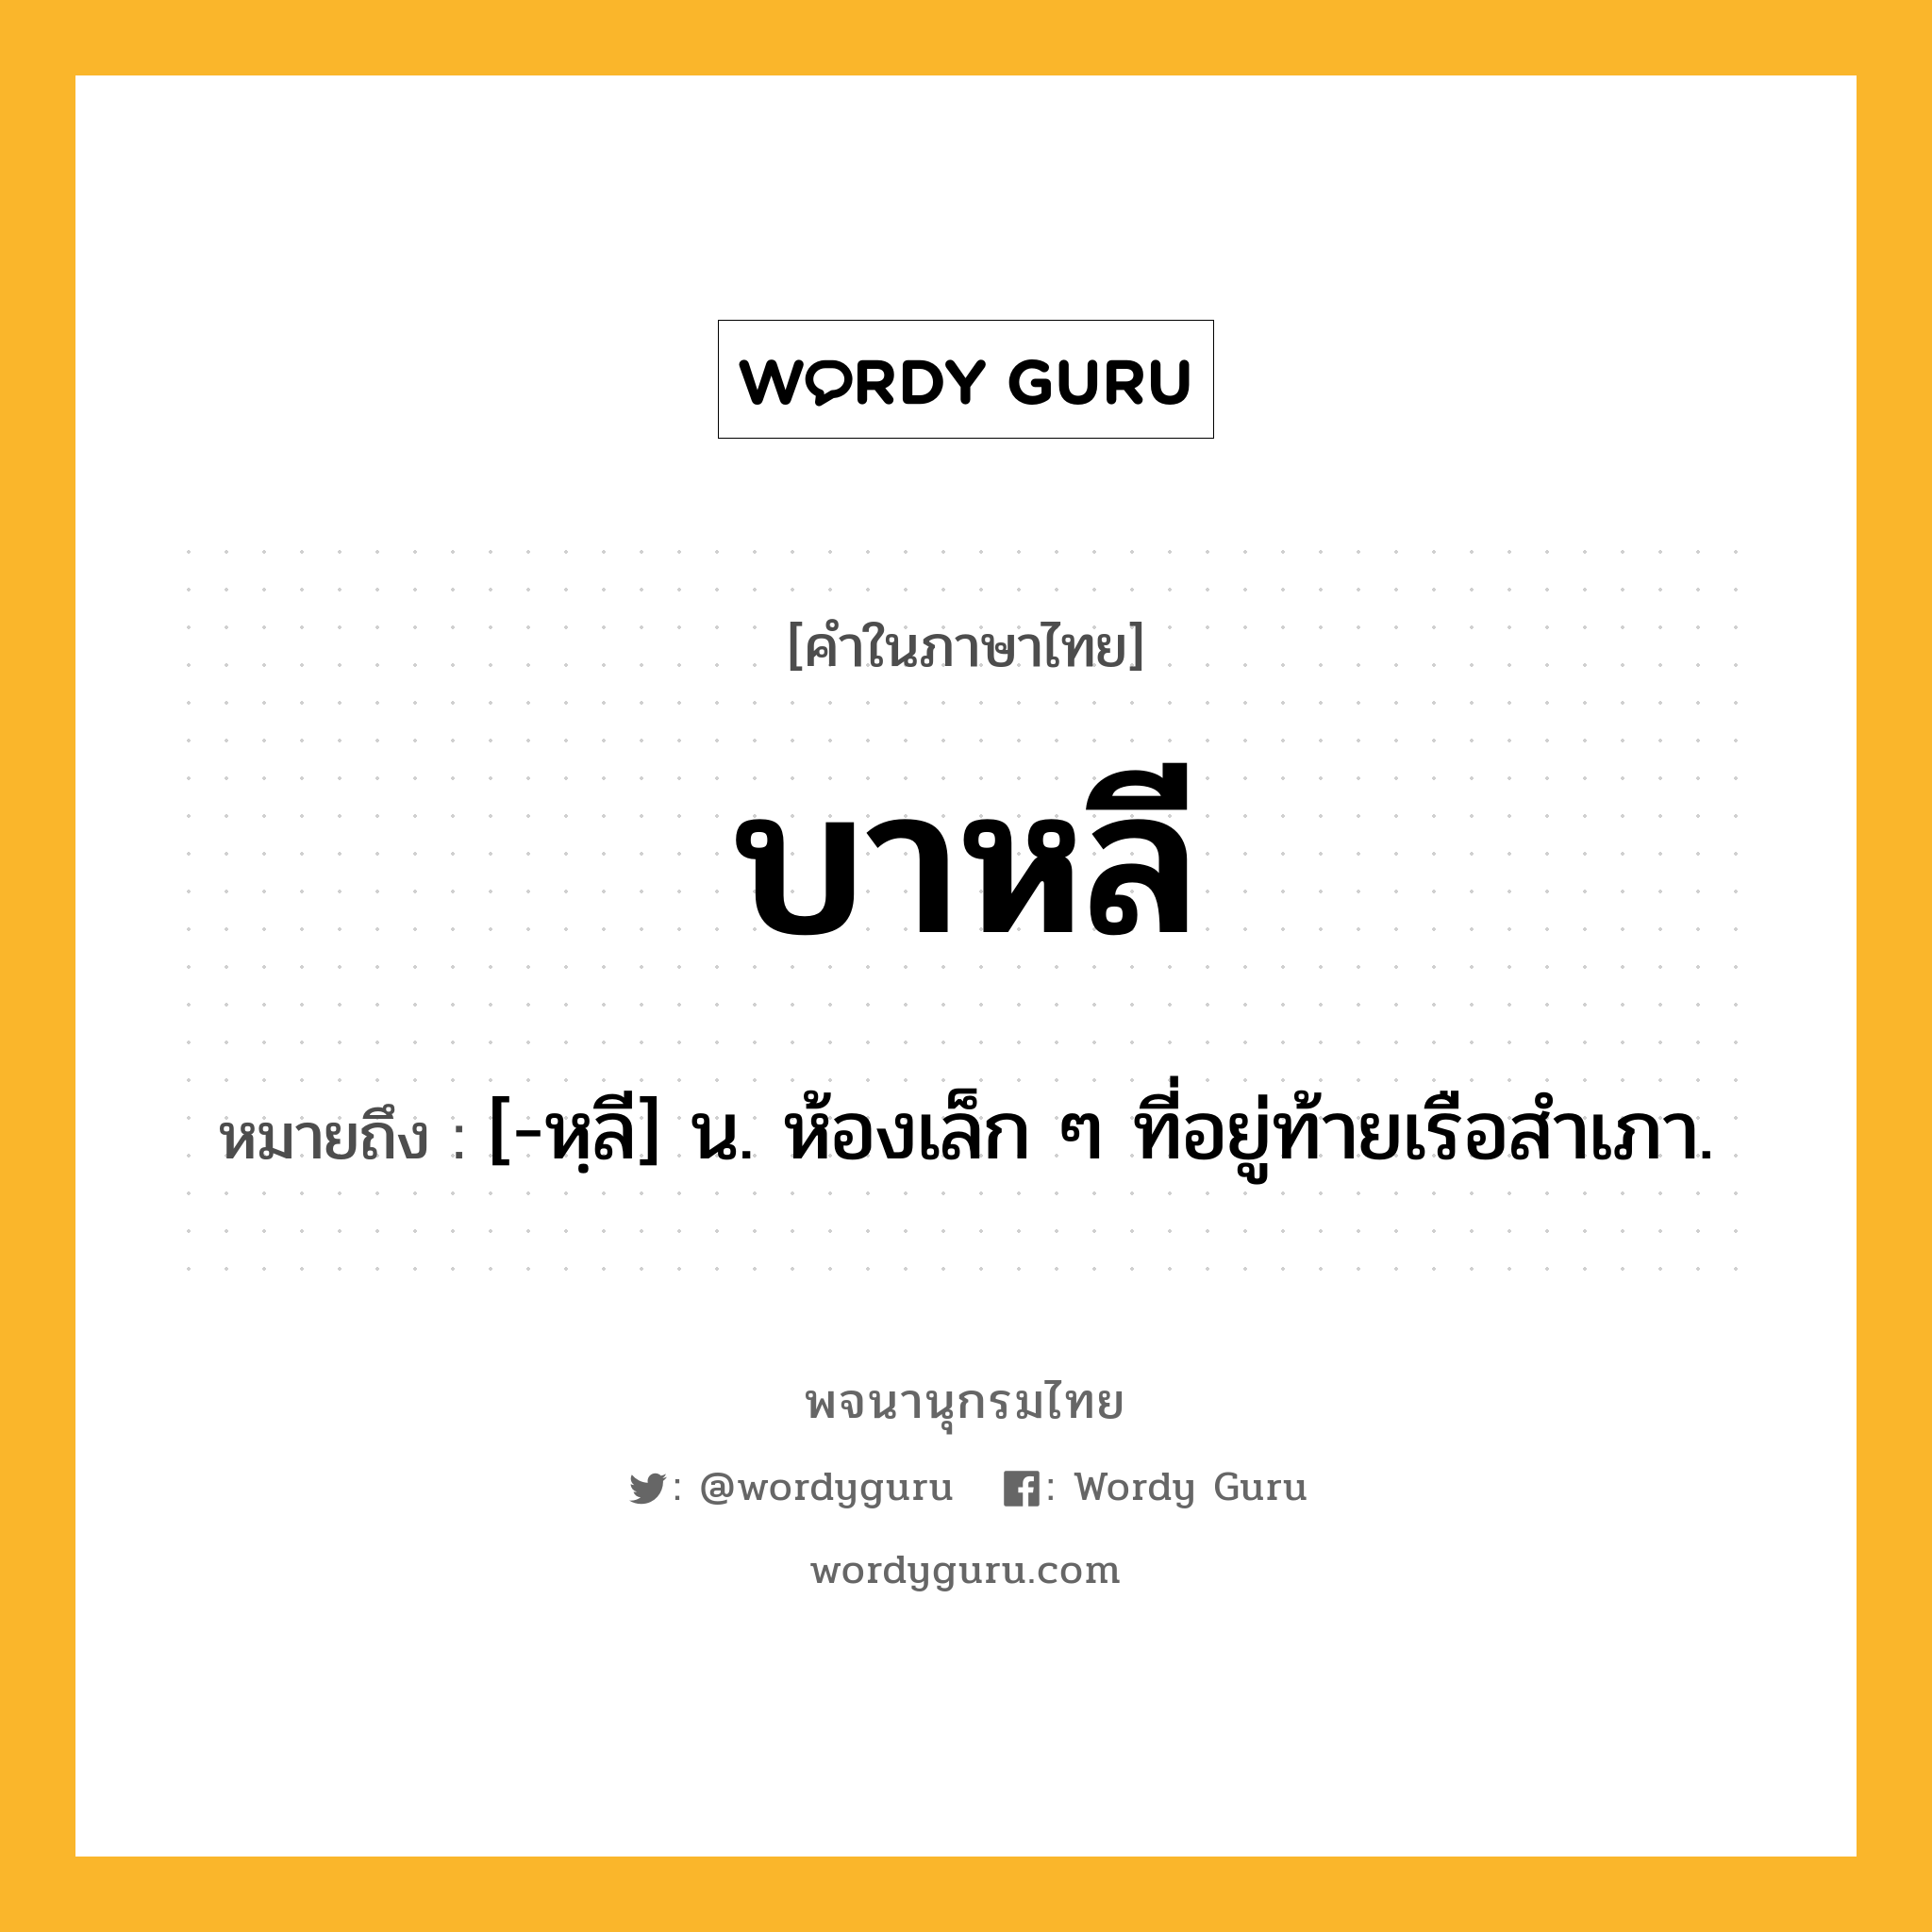 บาหลี หมายถึงอะไร?, คำในภาษาไทย บาหลี หมายถึง [-หฺลี] น. ห้องเล็ก ๆ ที่อยู่ท้ายเรือสําเภา.